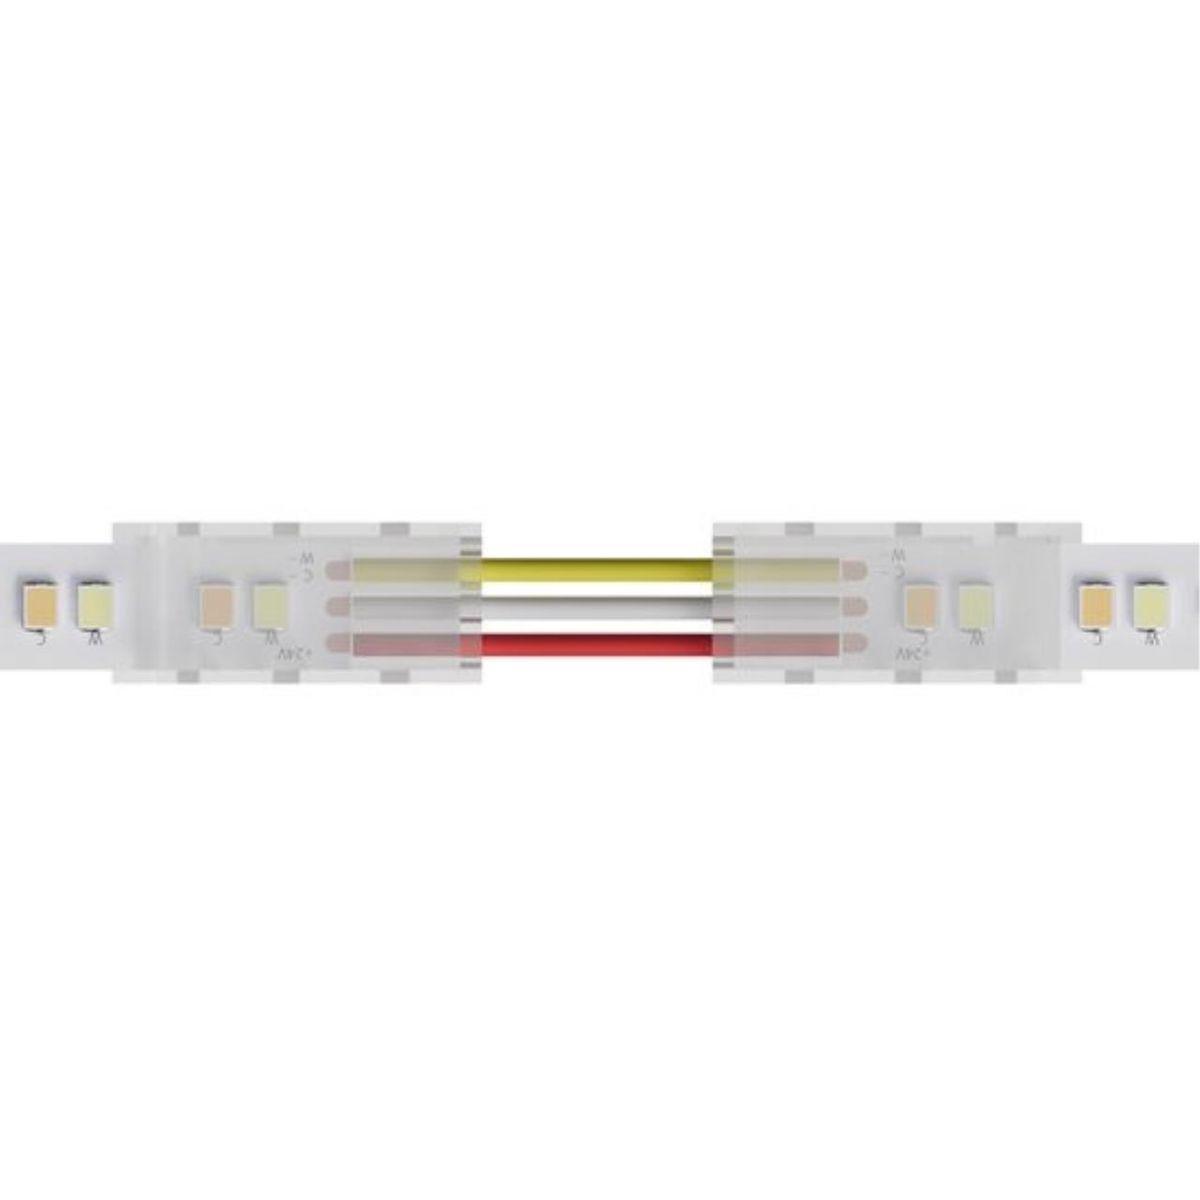  Arte Lamp Strip-Accessories A31-10-MIX